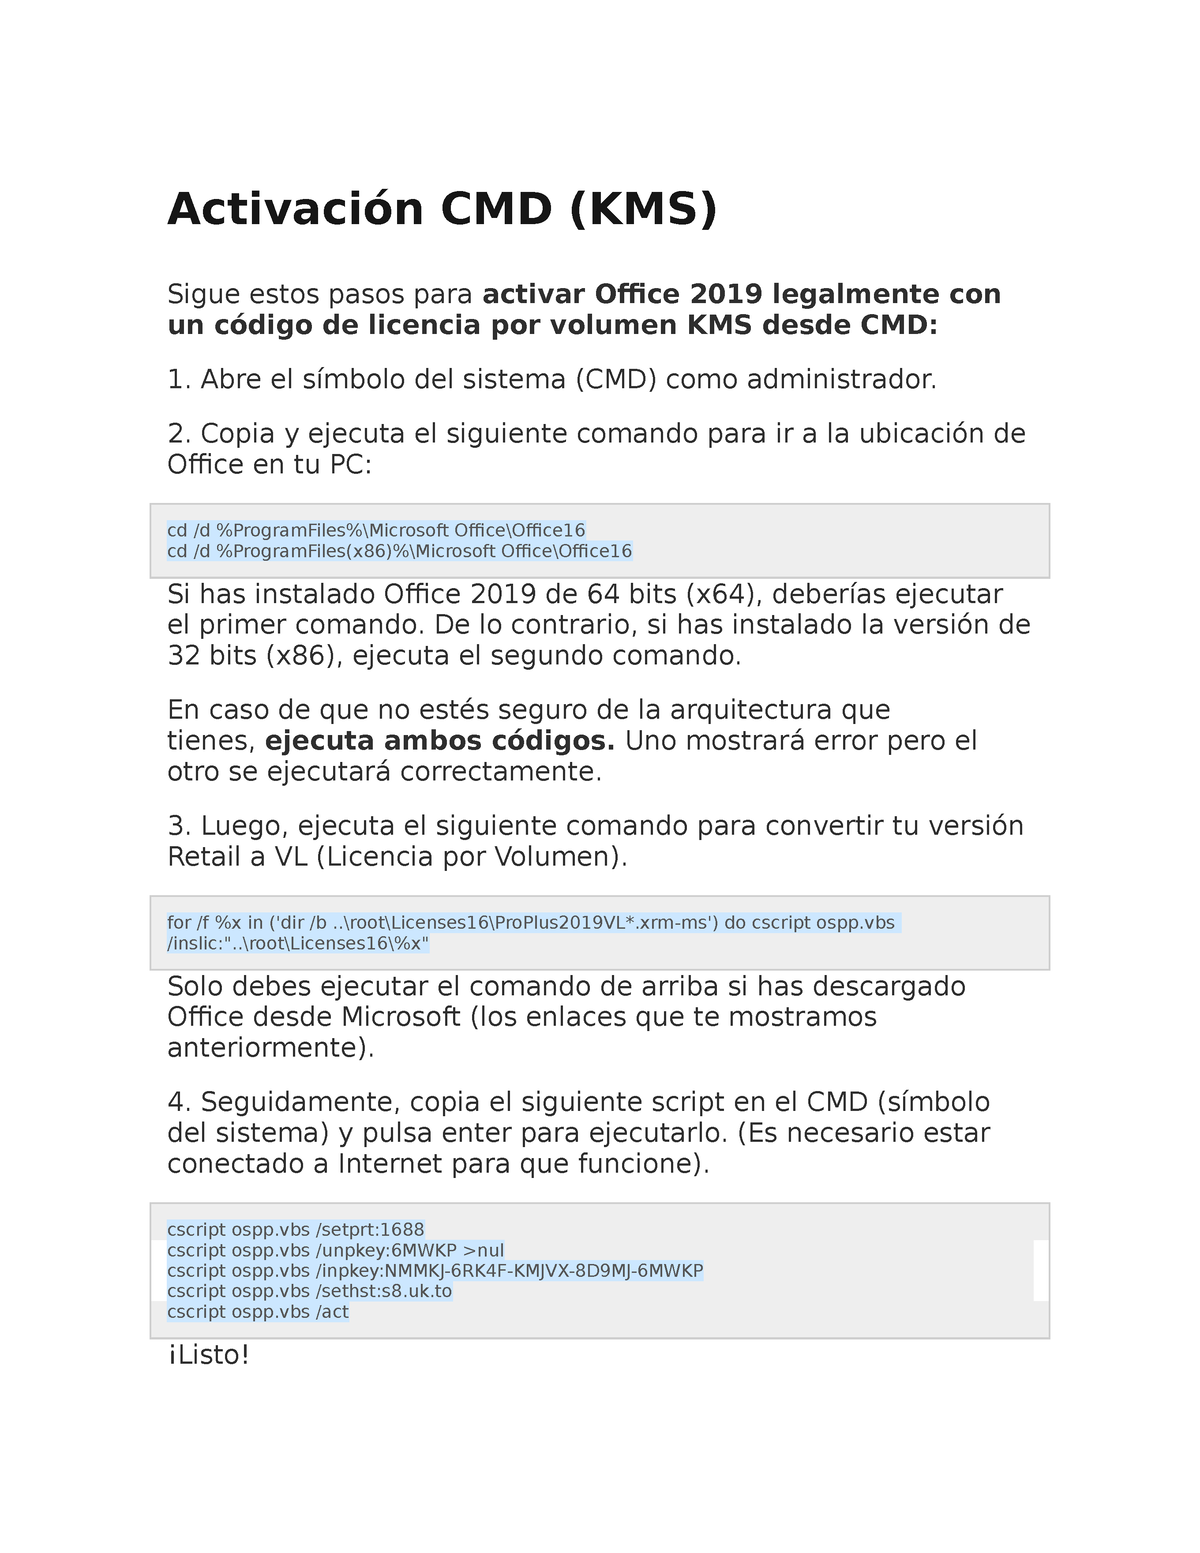 Activación CMD 2019 - CODIGO MEDIANTE CDM PARA CTIVAR OFFICE 2019 -  Activación CMD (KMS) Sigue estos - Studocu